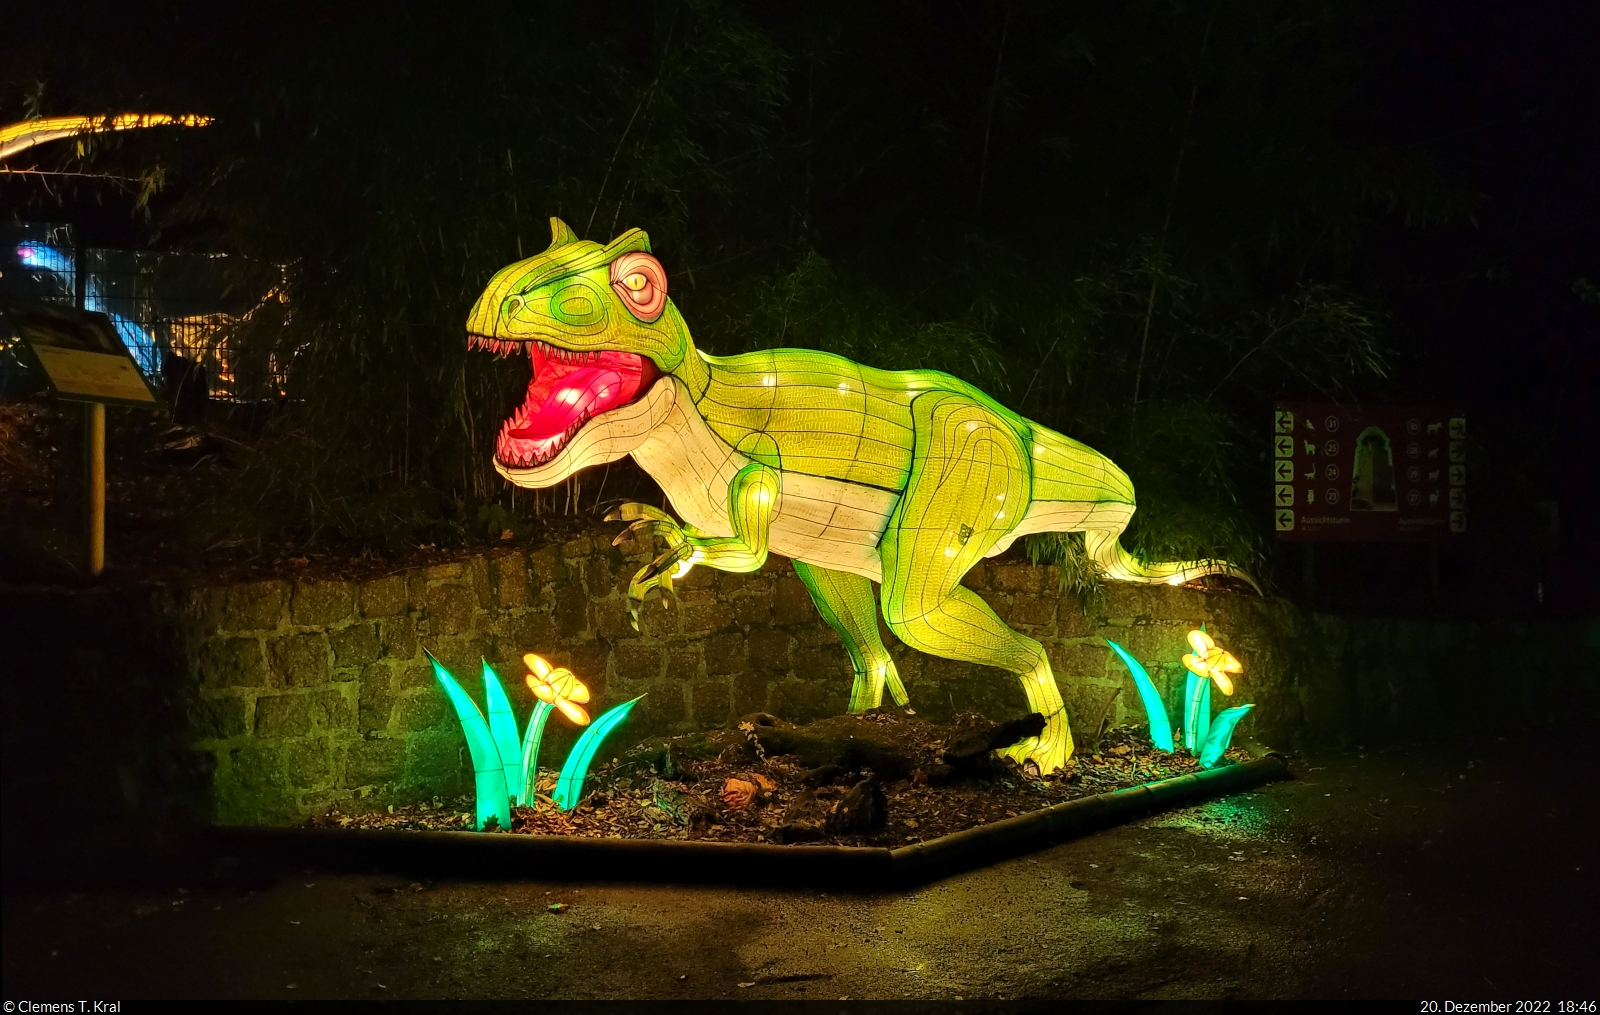 Magische Lichterwelten im Bergzoo Halle (Saale) (4)

Auch entlang der Wege des Zoos waren Kunstwerke wie dieser Dinosaurier ausgestellt.

🕓 20.12.2022 | 18:46 Uhr